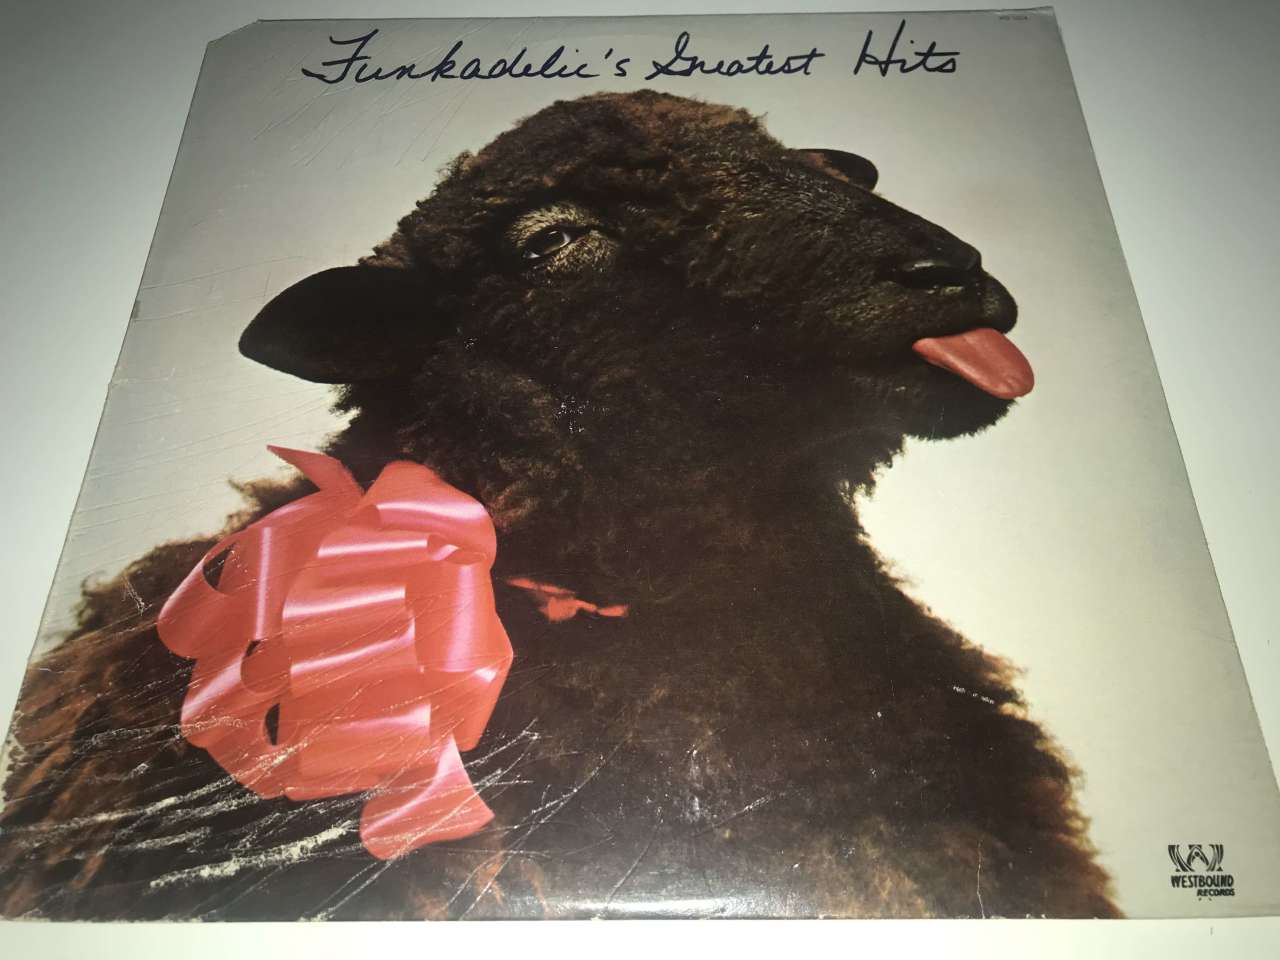 Funkadelic – Funkadelic's Greatest Hits